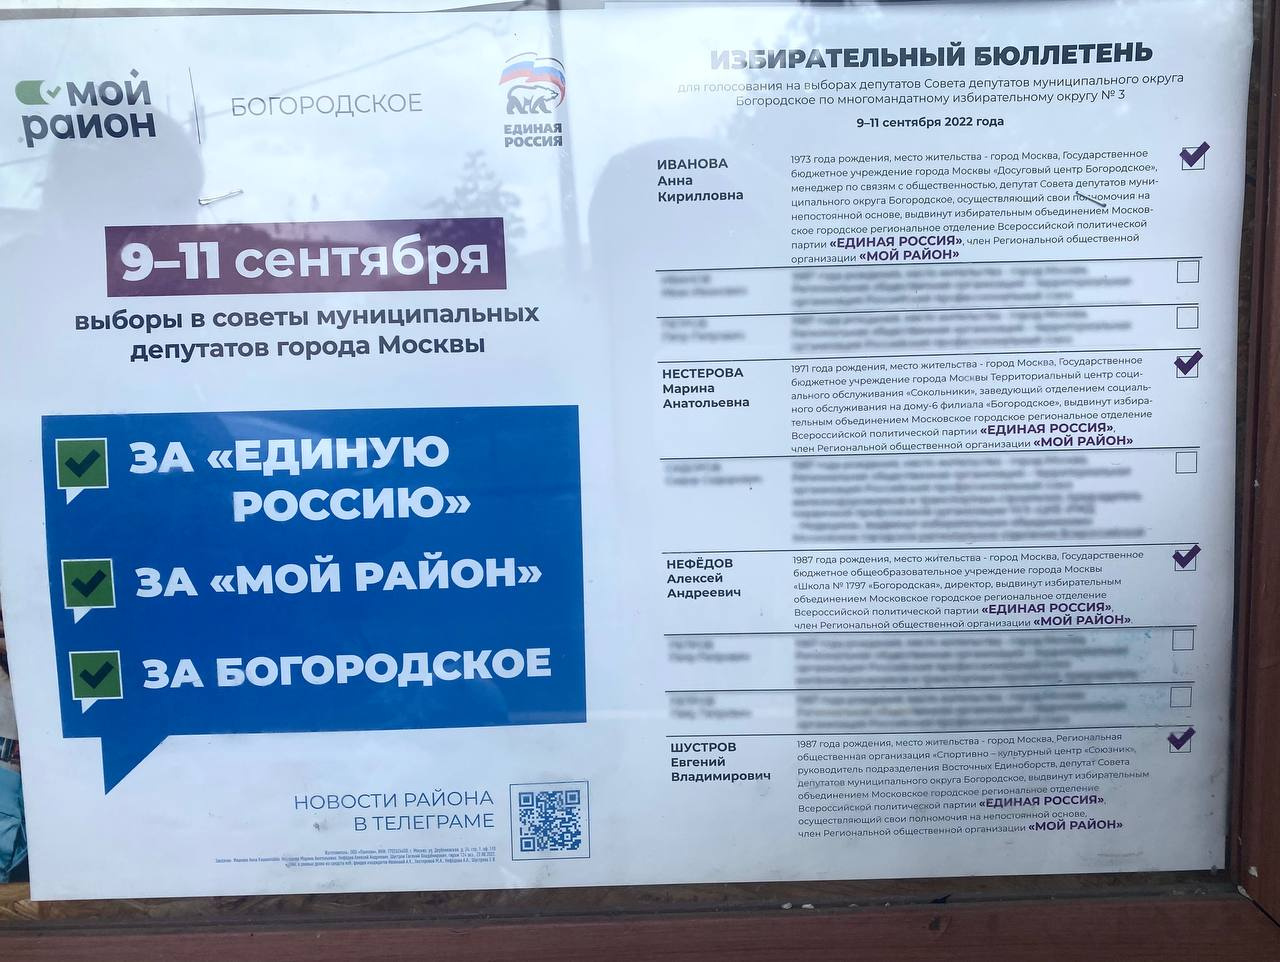 Агитационный плакат кандидатов от «Единой России». Он выглядит как бюллетень, на котором замазаны имена других участников гонки